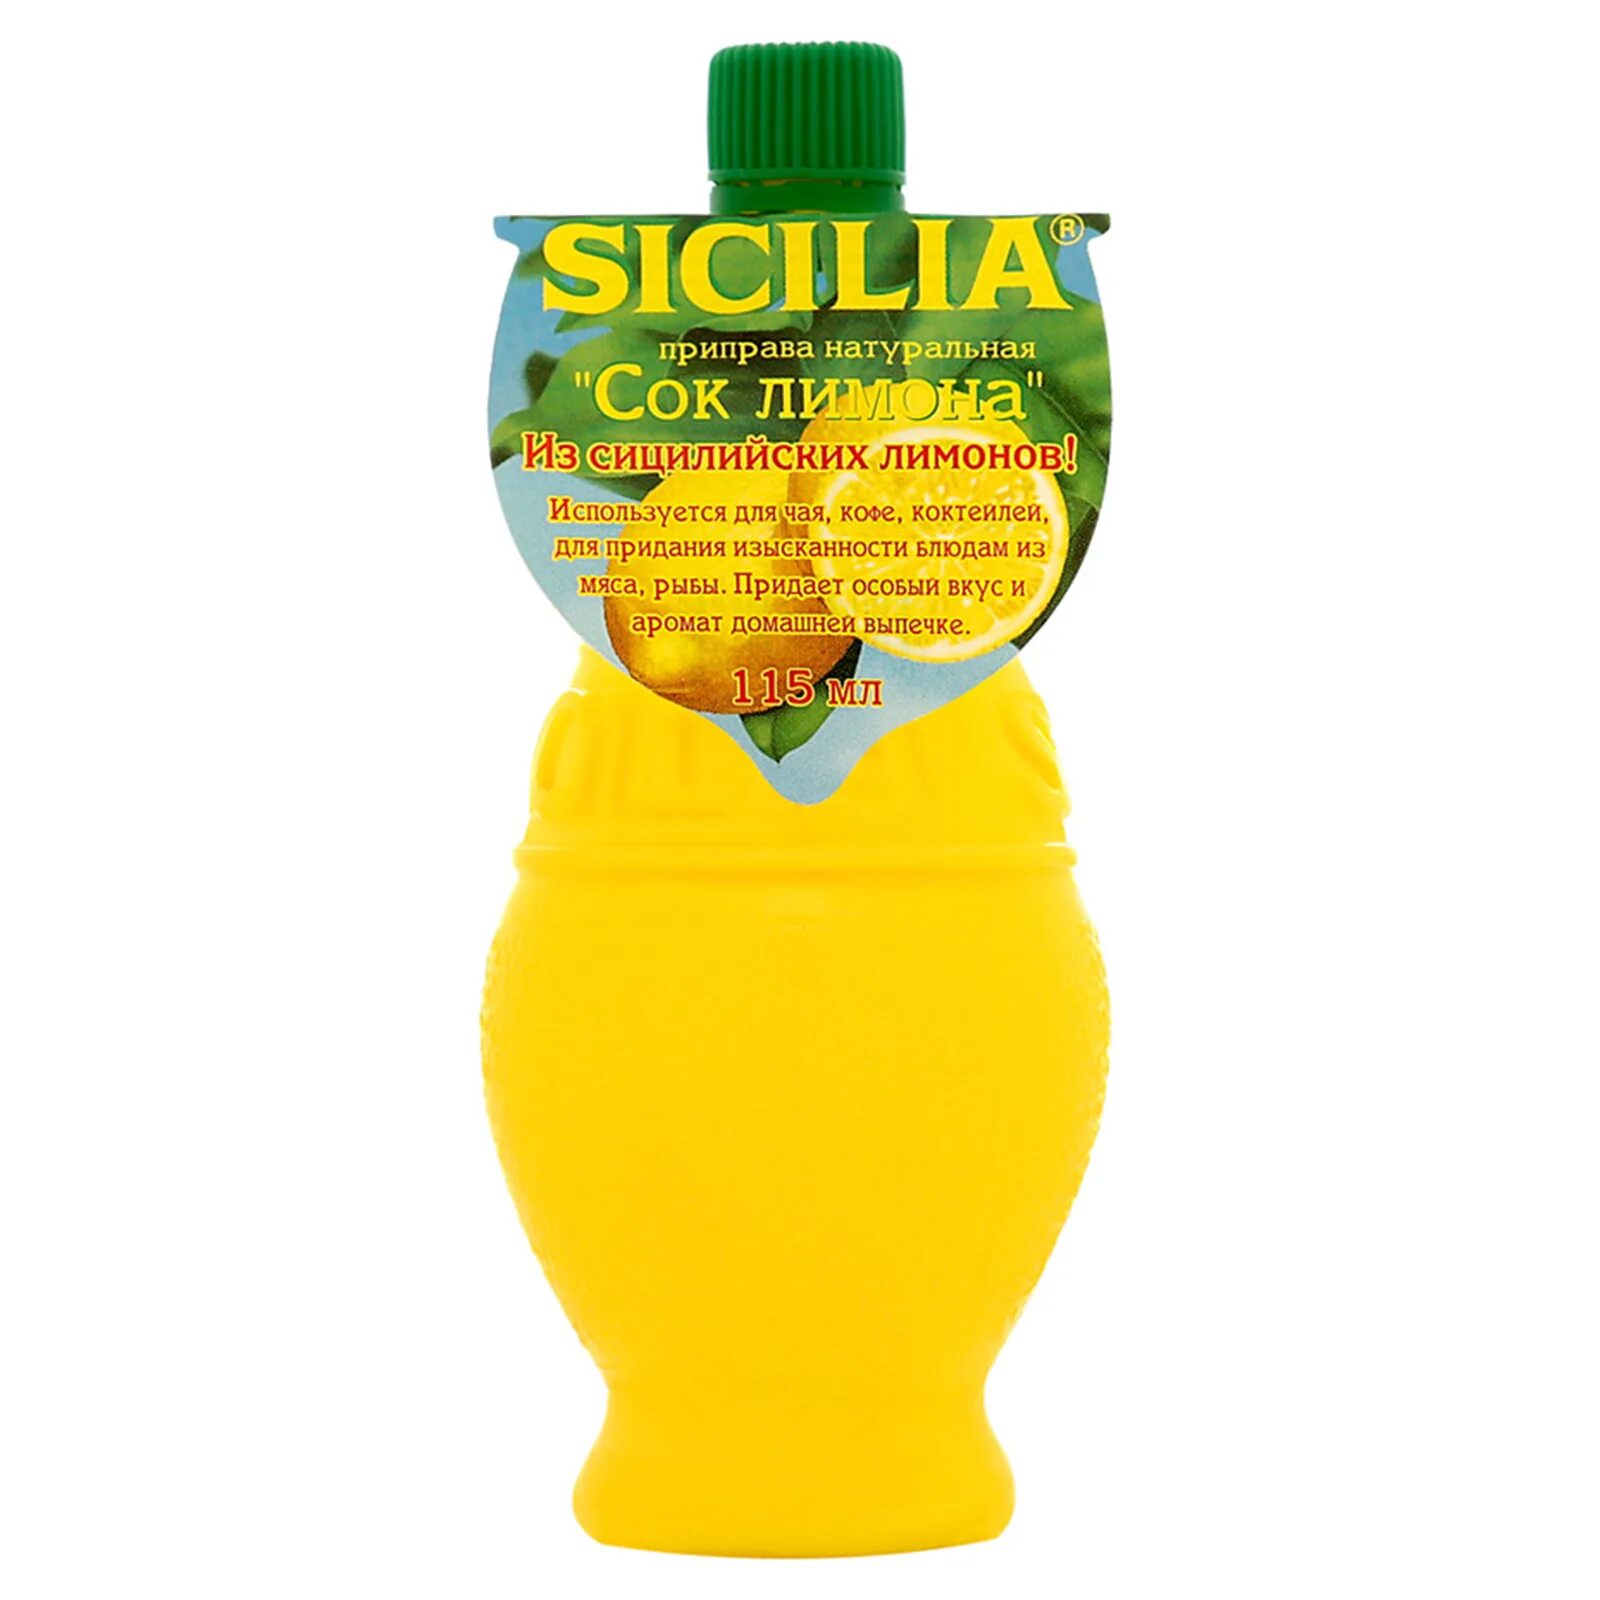 Сок лимона какой. Приправа Sicilia сок лимона, 115мл. Сок лимона Сицилия 115 мл. Sicilia приправа натуральная сок лимона 115 г.